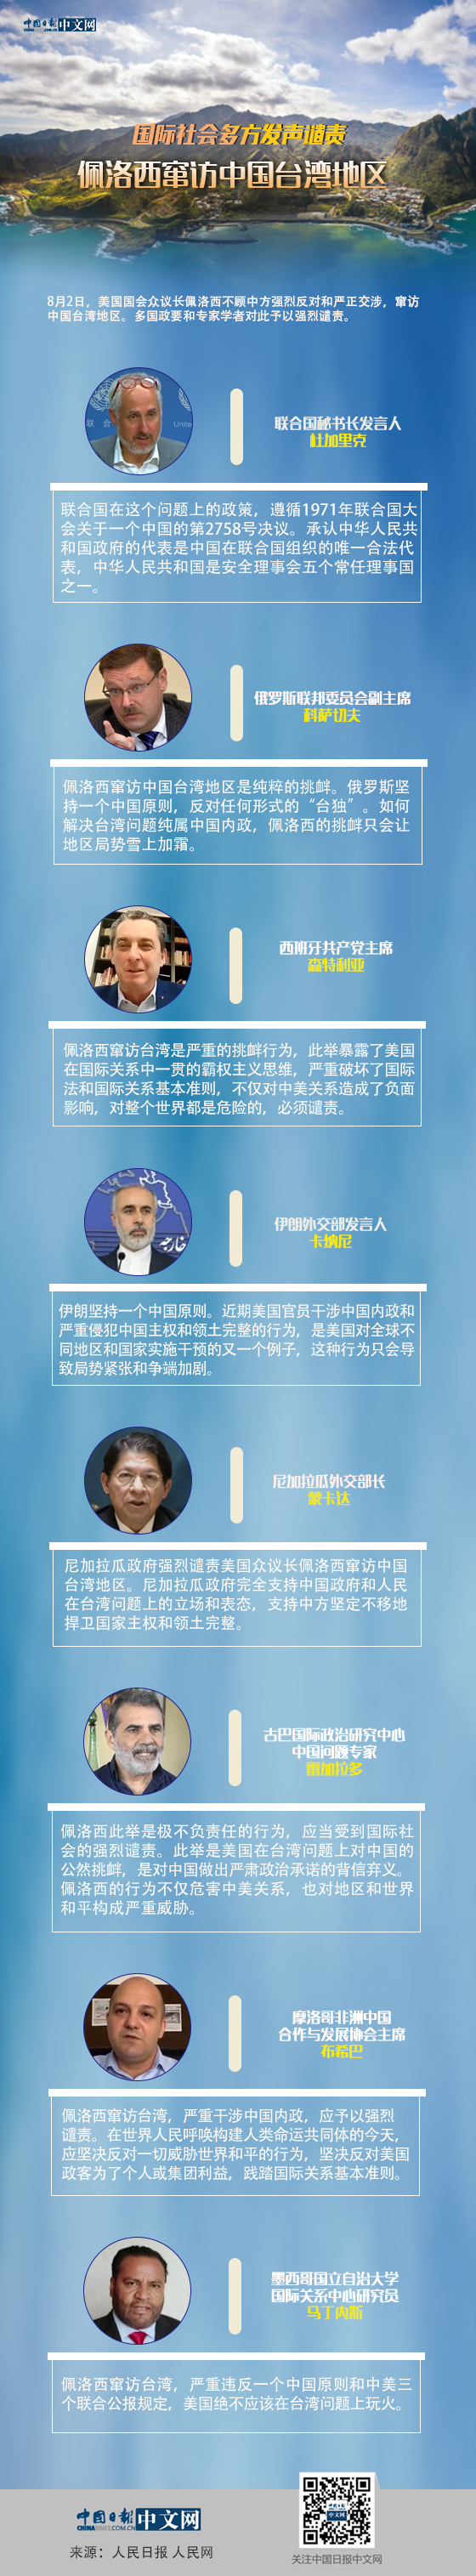 国际社会多方发声谴责佩洛西窜访中国台湾地区